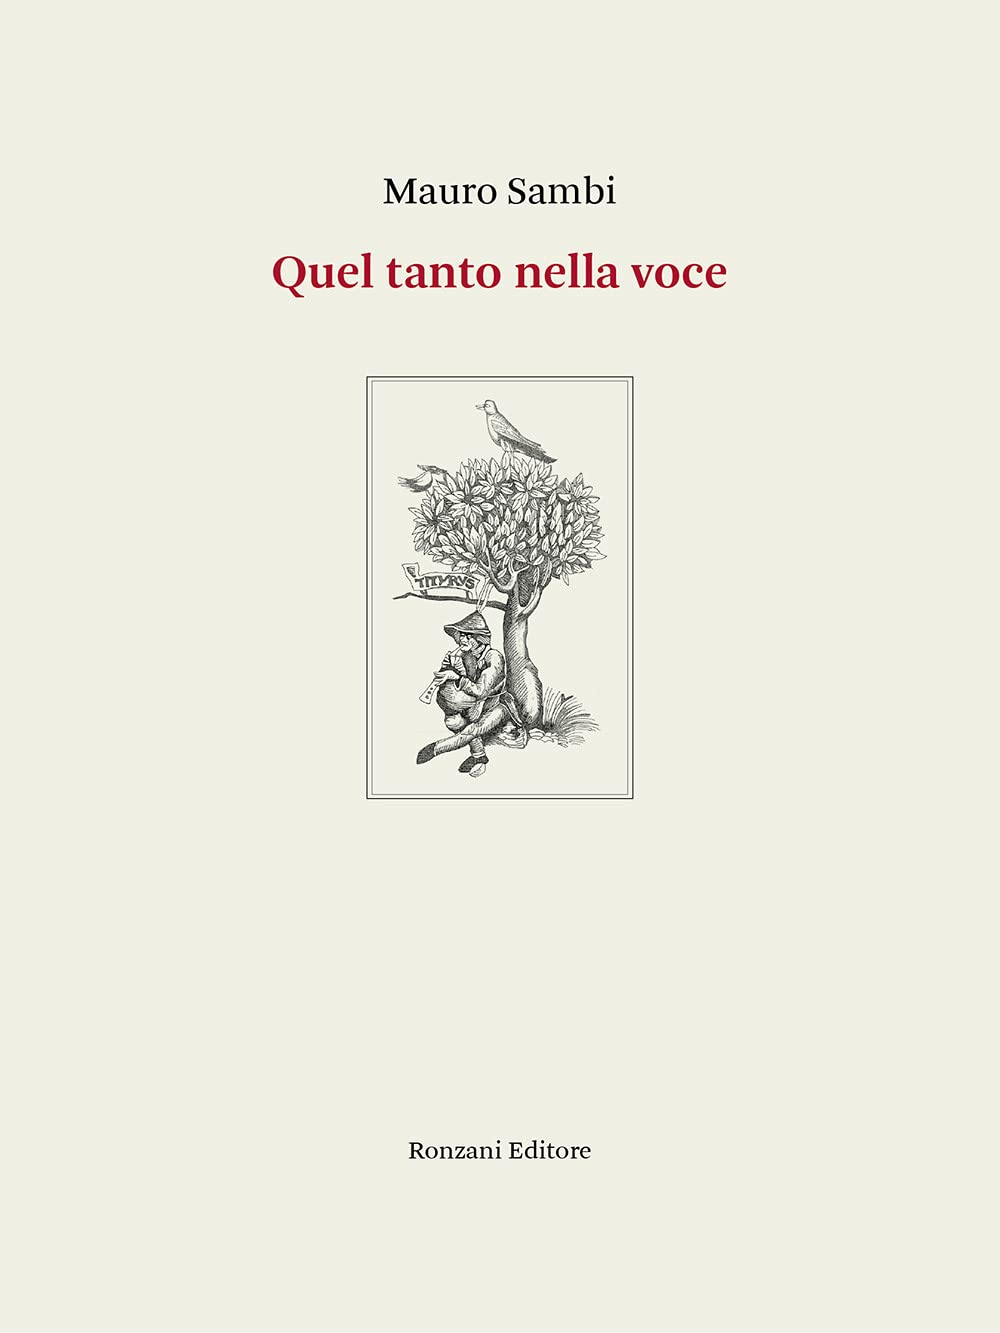 Libri Mauro Sambi - Quel Tanto Nella Voce. Poesie 1994-2020. Ediz. Integrale NUOVO SIGILLATO, EDIZIONE DEL 09/03/2022 SUBITO DISPONIBILE